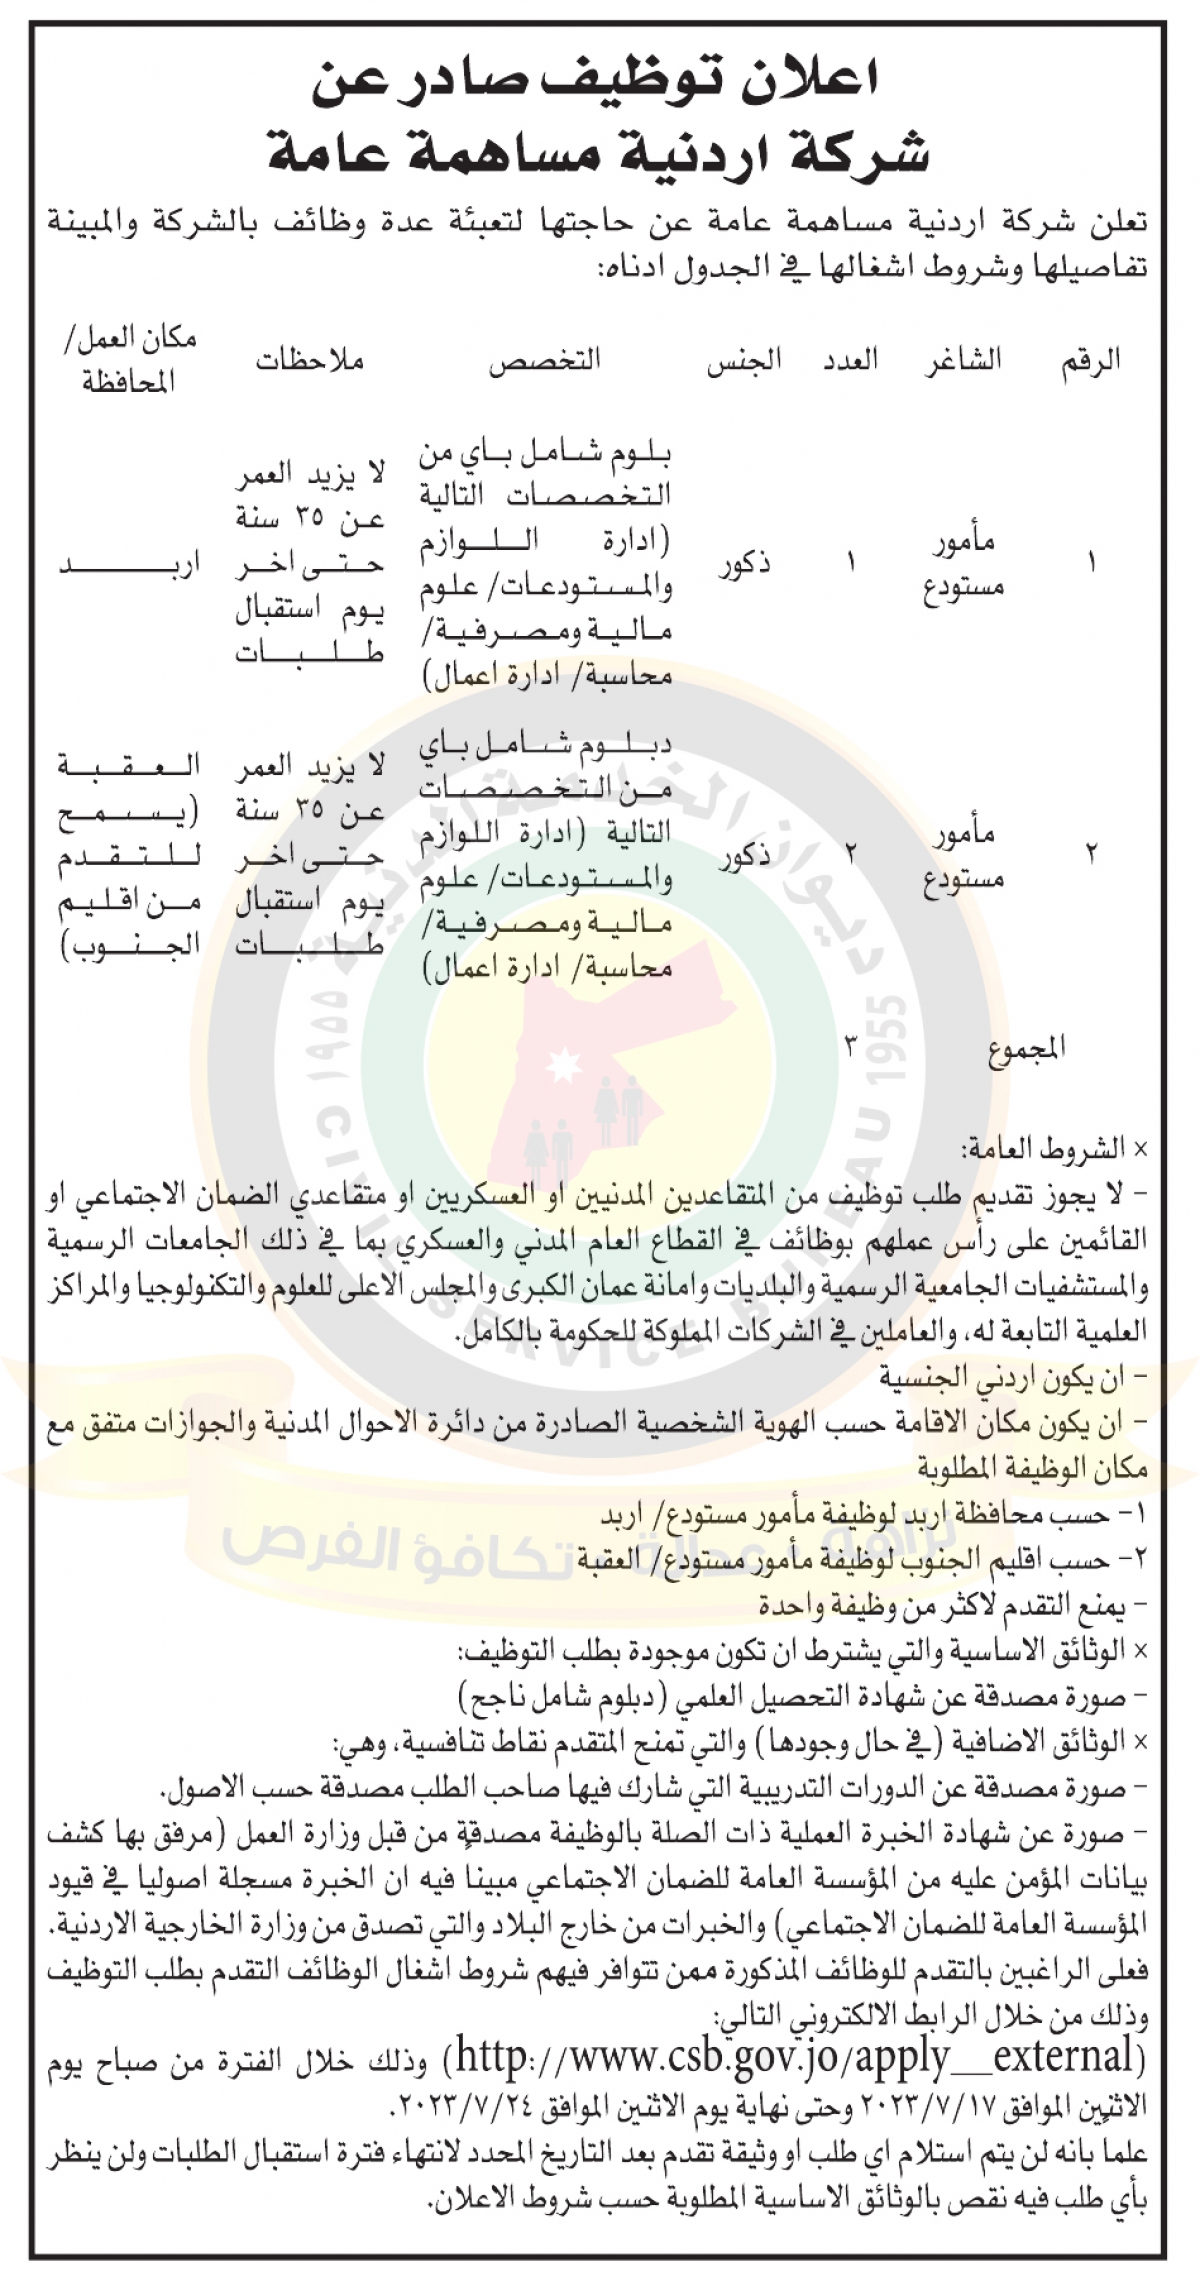 اعلان توظيف صادر عن شركة اردنية مساهمة عامة